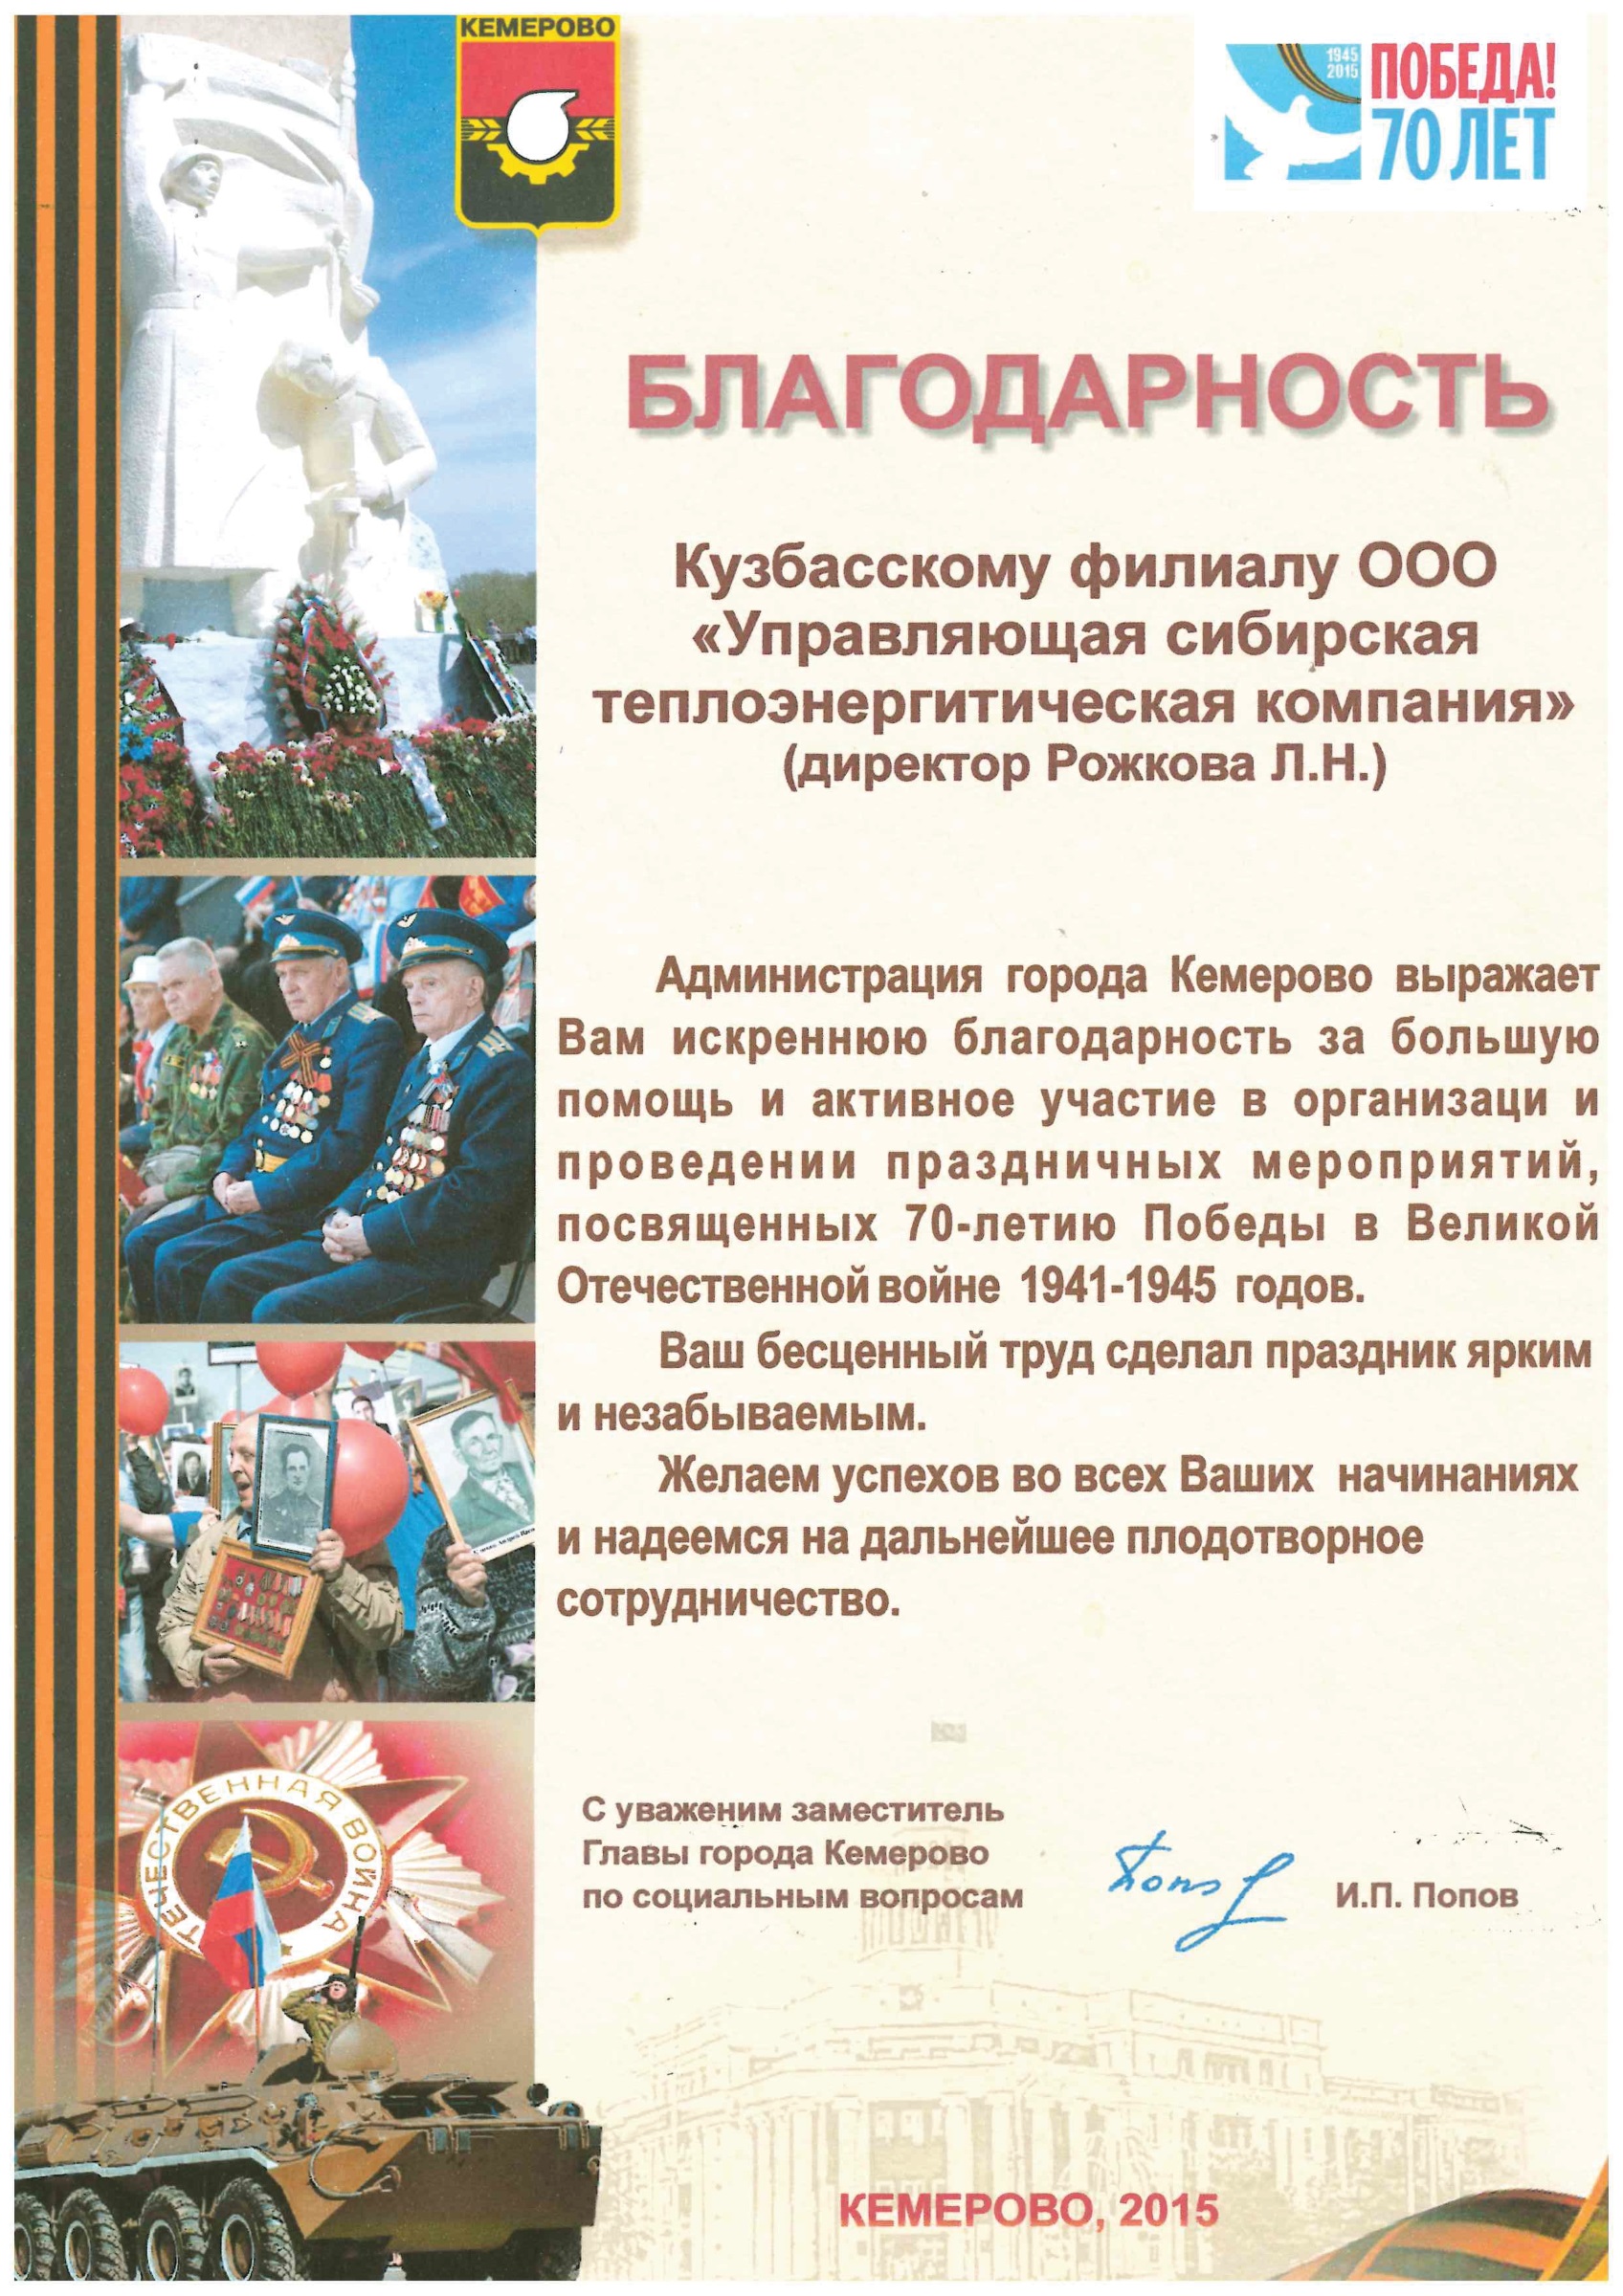 Благодарность от Администрации г. Кемерово, 2015 г.